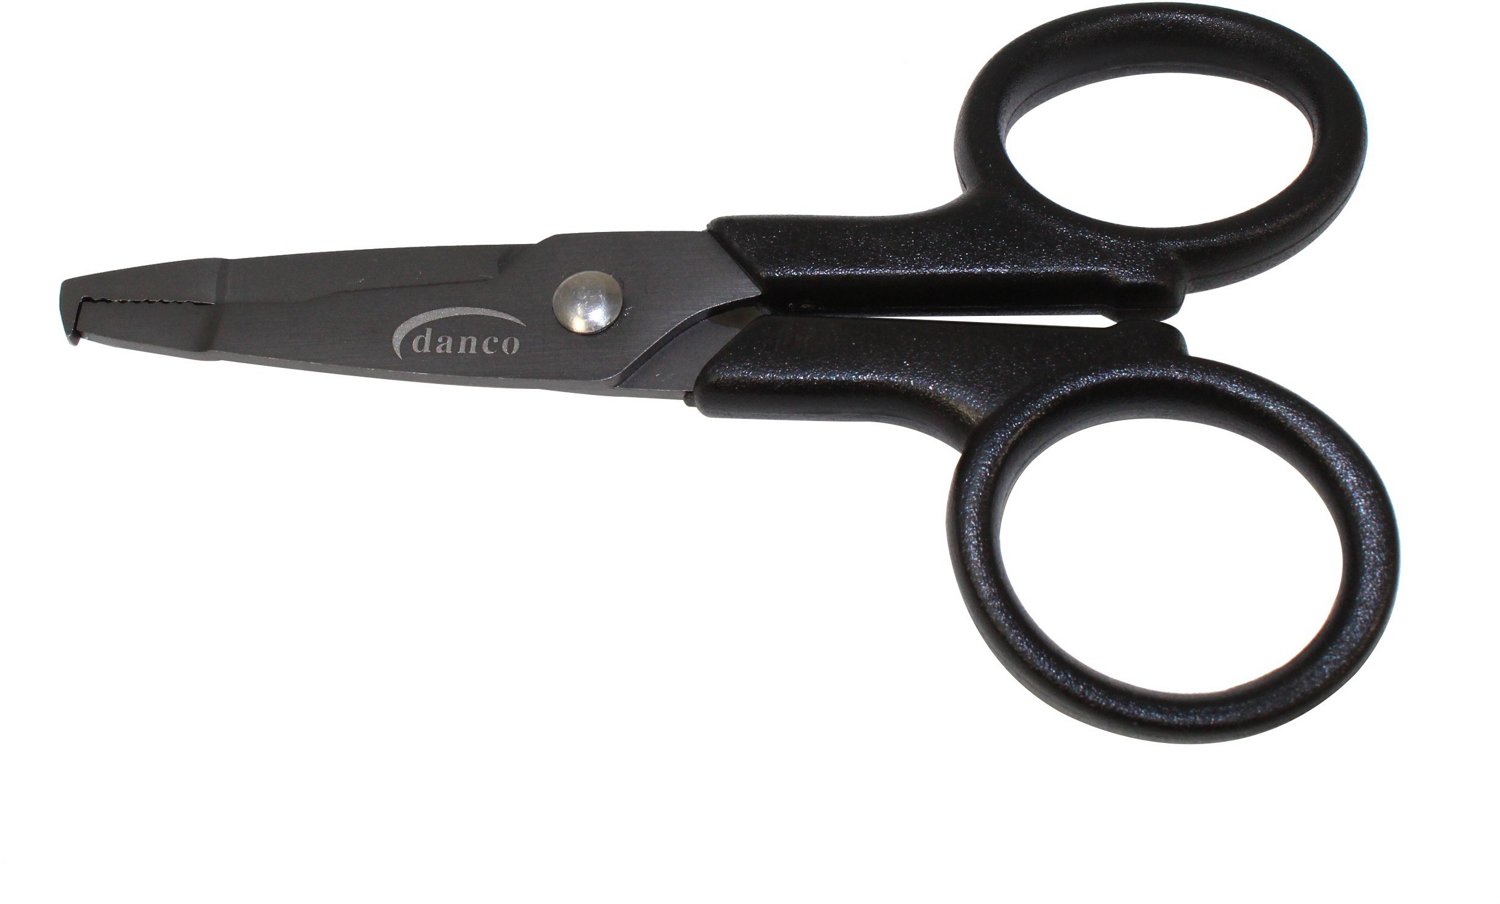 Danco Superior 4-1/2 in Braid Scissors